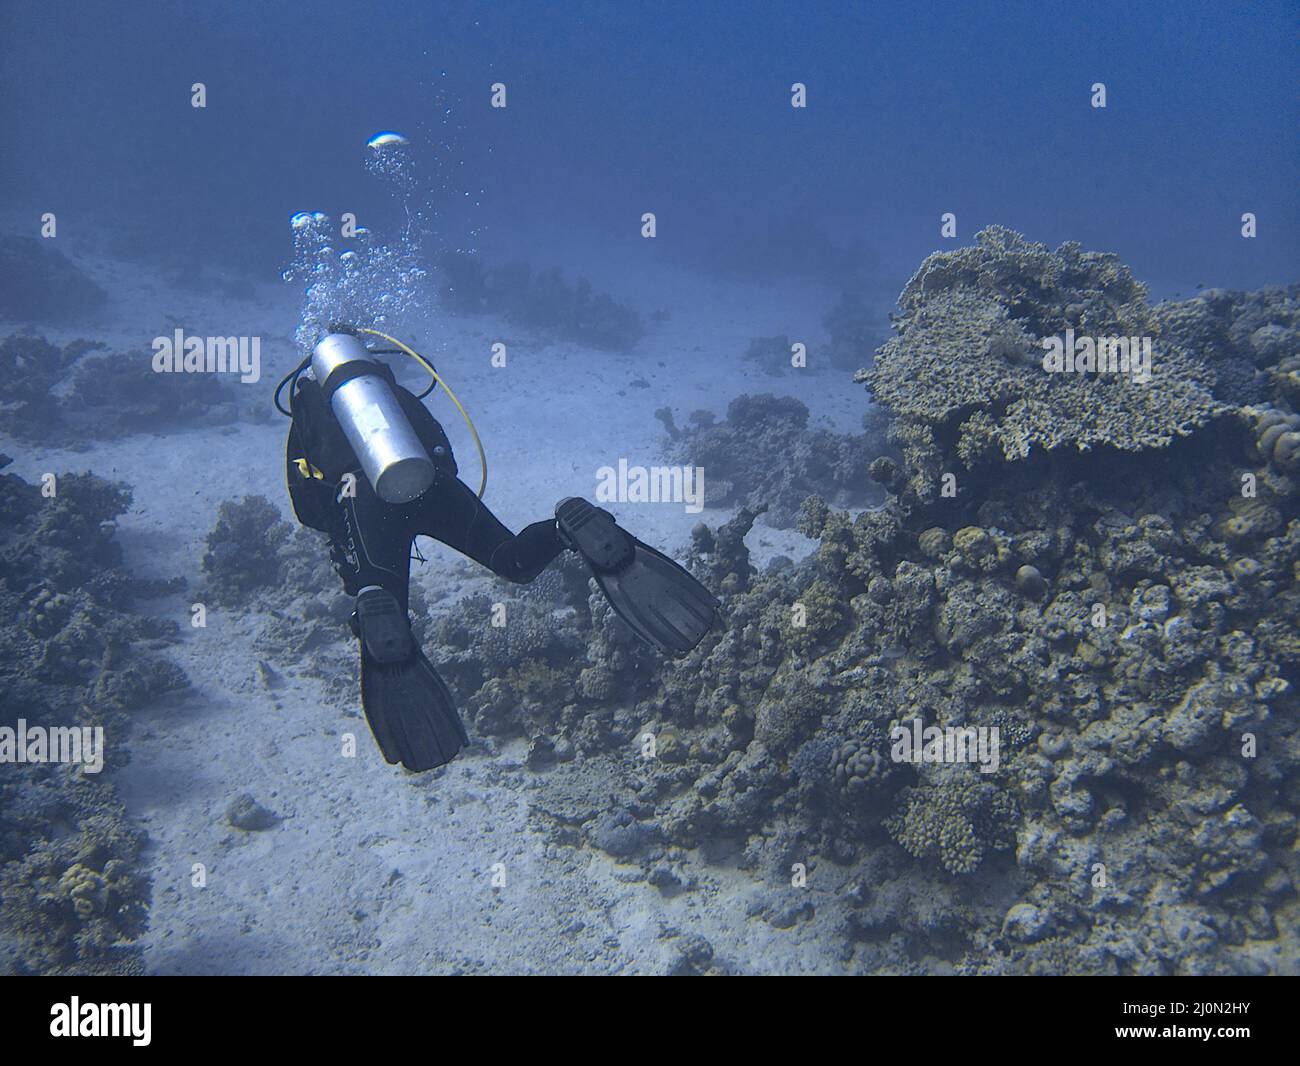 Plongée sous marine et les récifs coralliens Banque D'Images